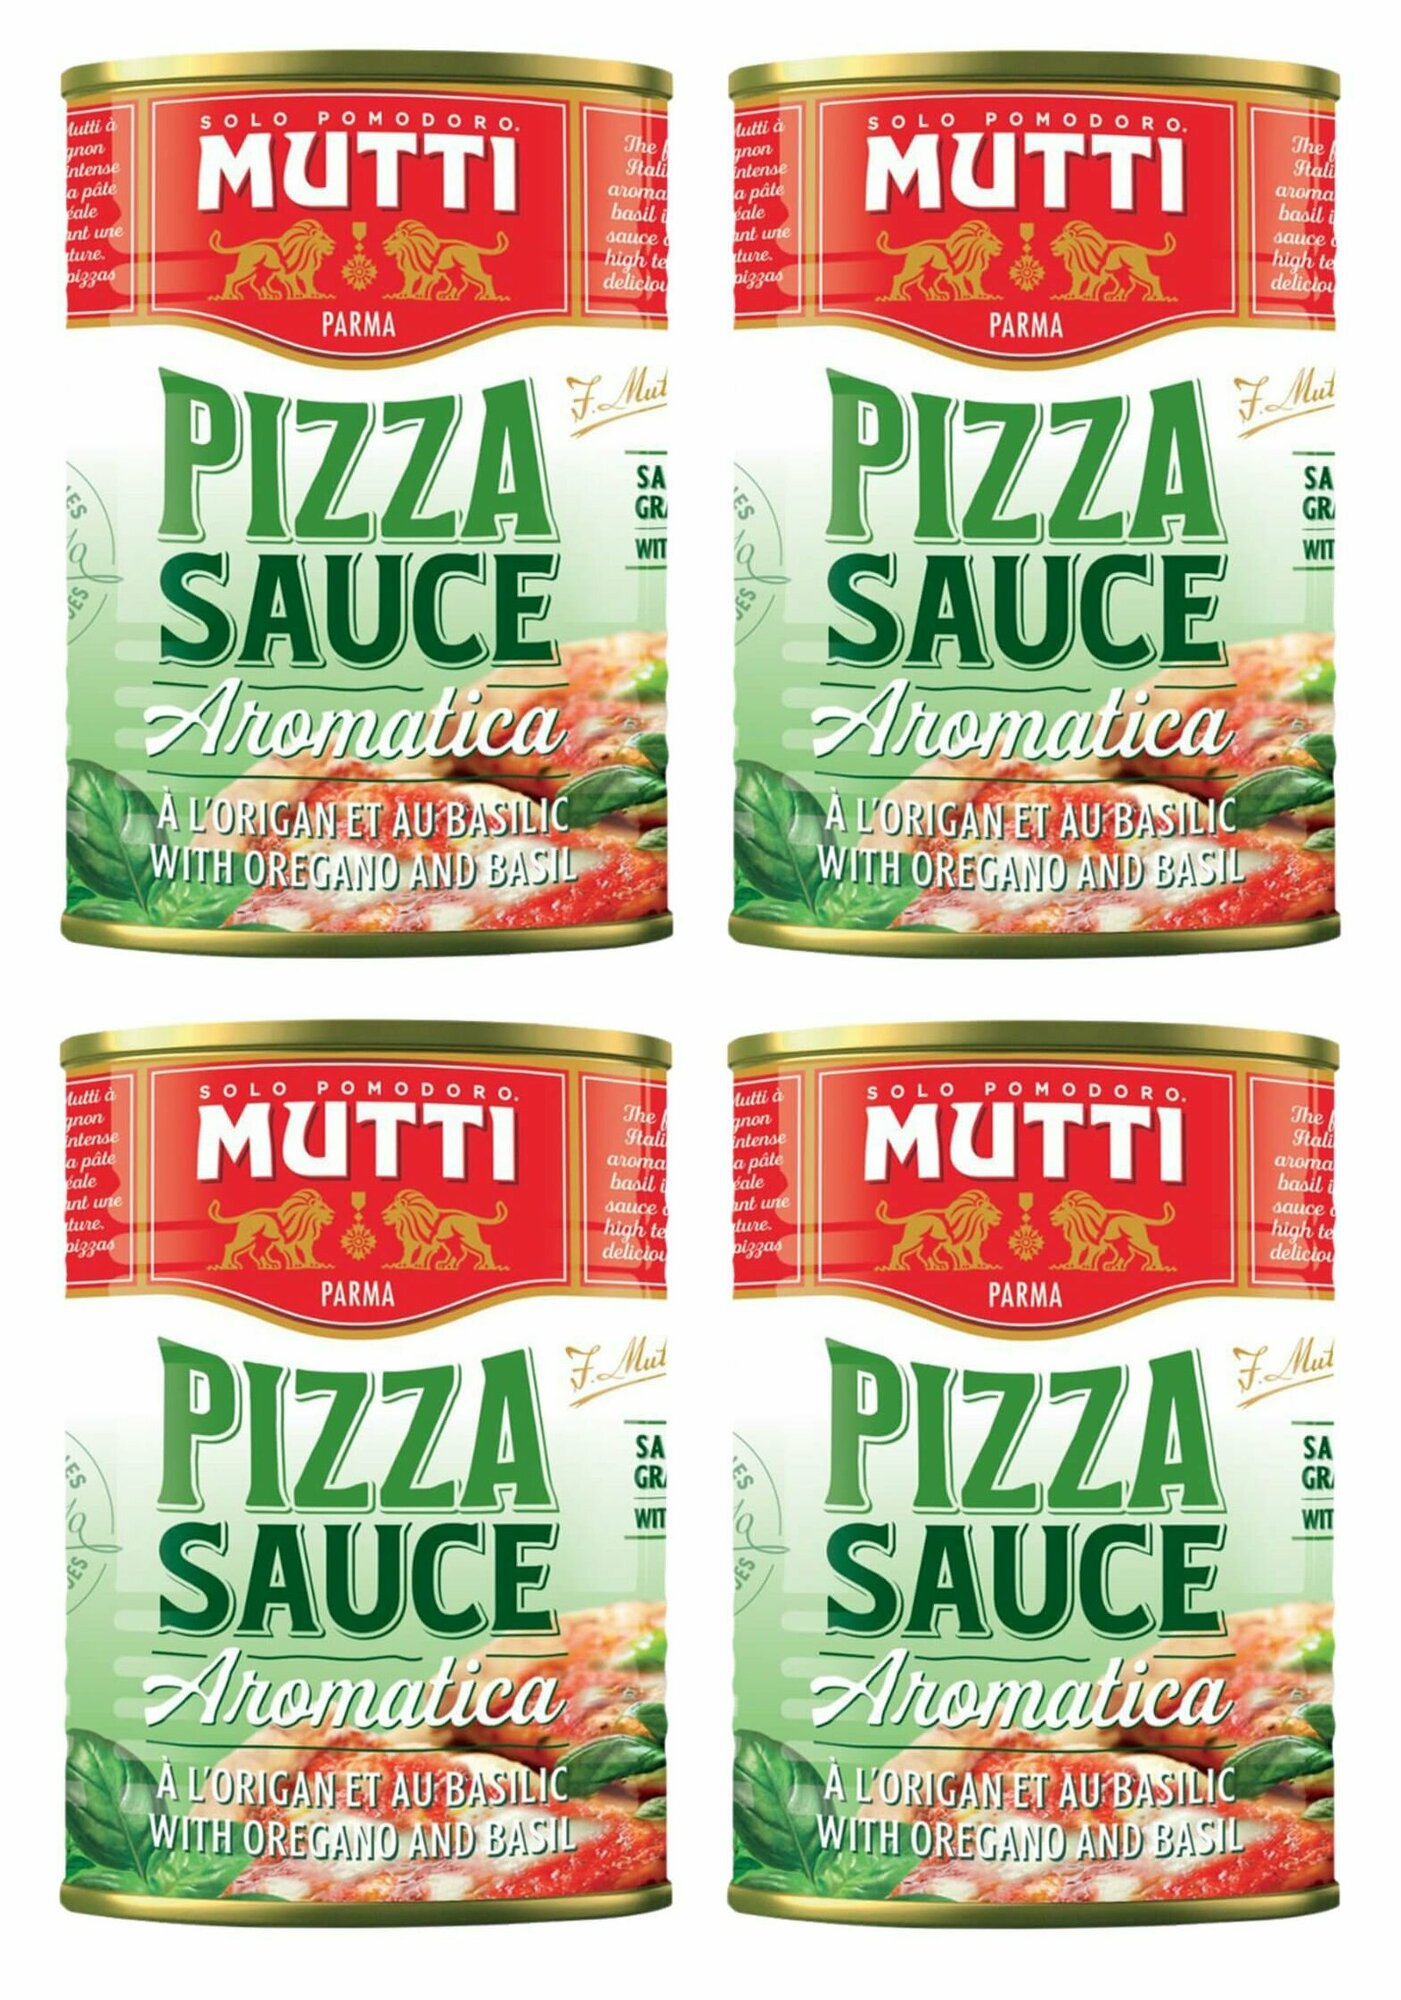 Натуральный томатный соус для пиццы ароматизированный Mutti (Мутти), Италия, ж/б 400 г х 4шт